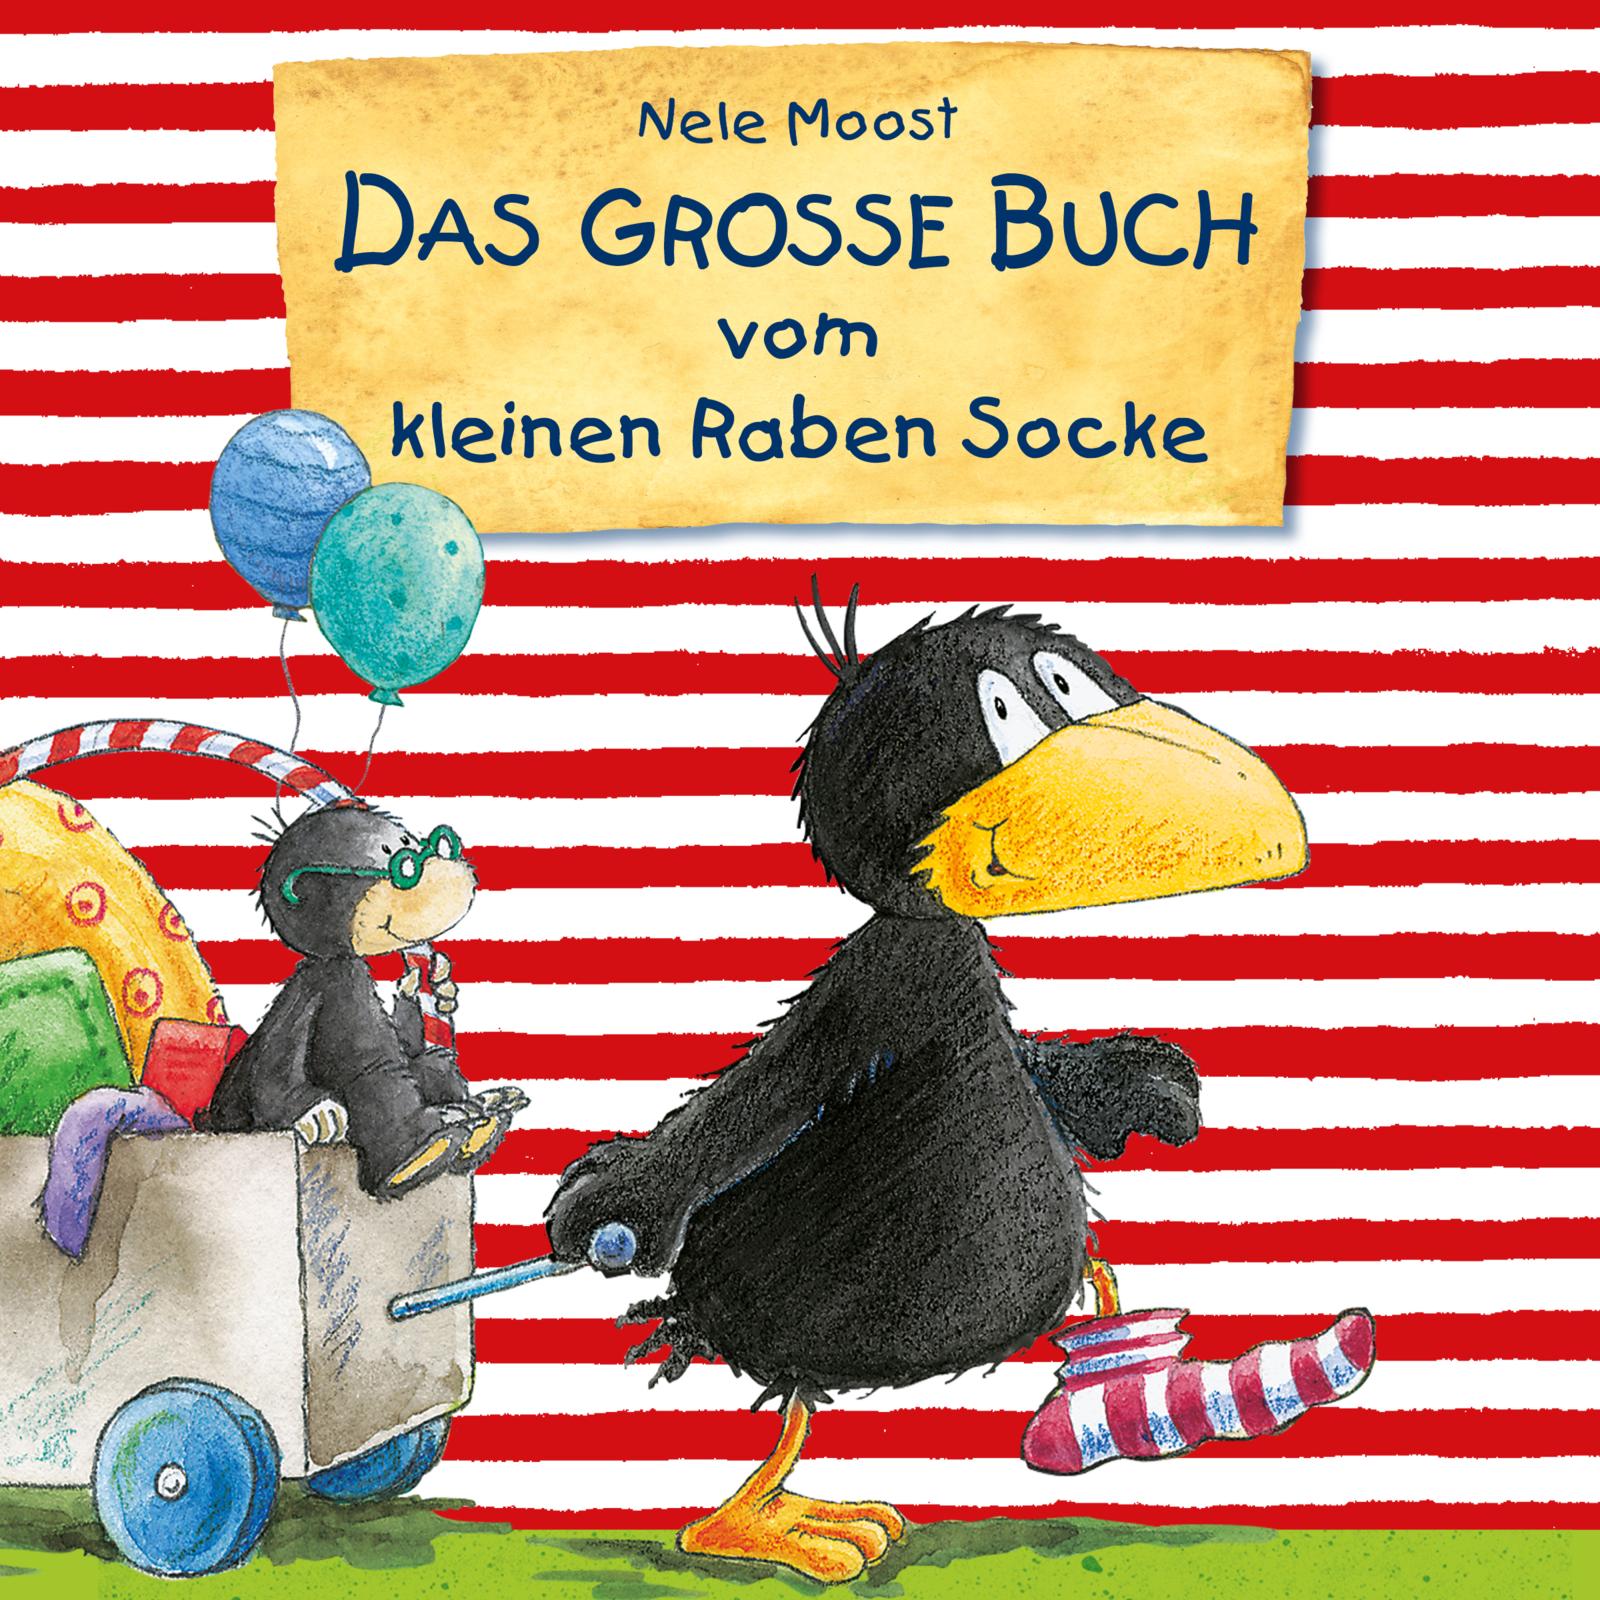 Der kleine Rabe Socke - Lesungen: Das große Buch vom kleinen Raben Socke |  Hörbuch Hamburg Verlag